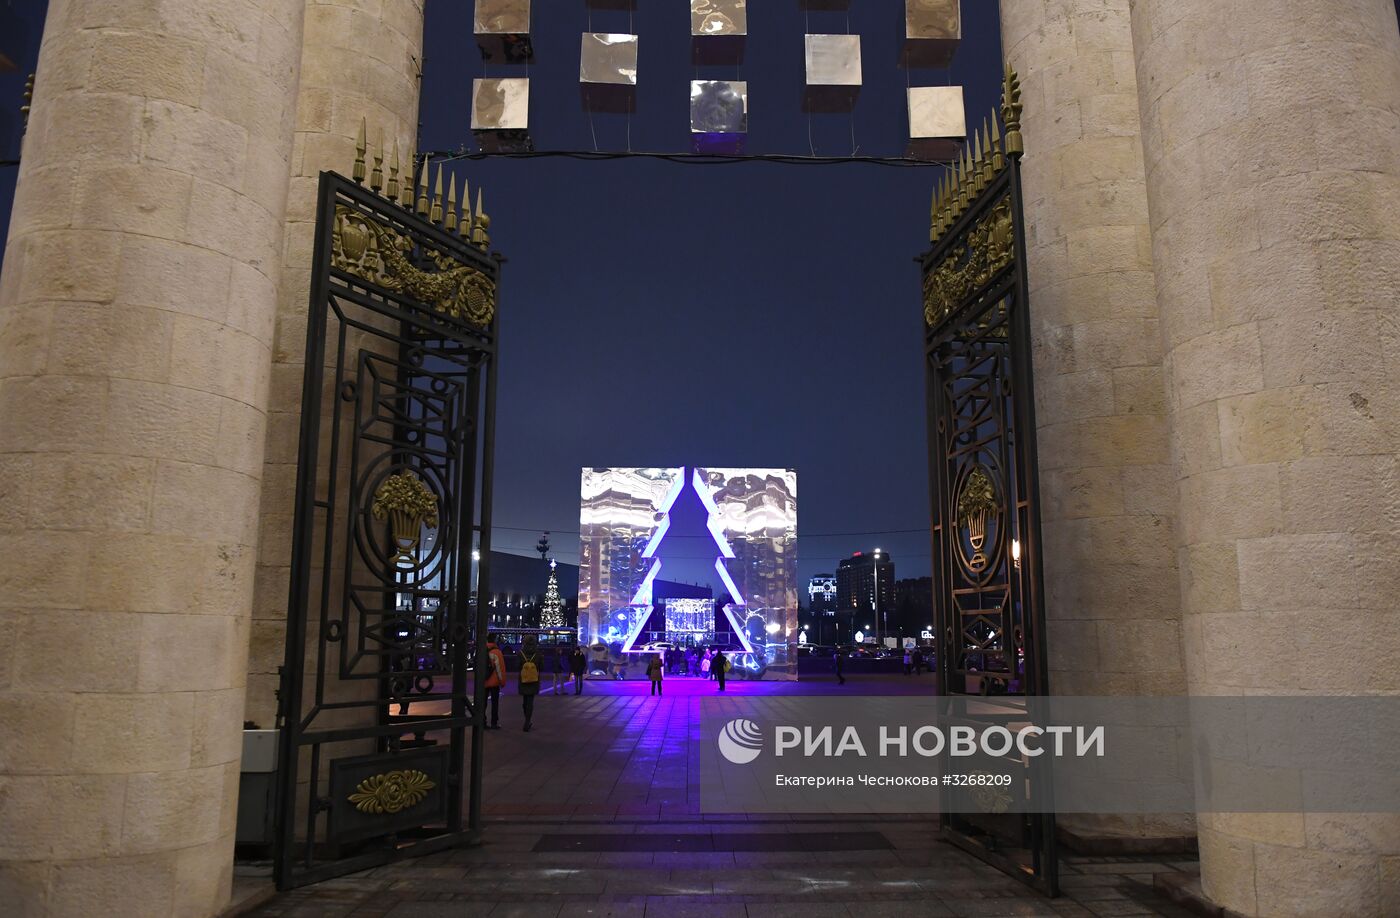 Открытие новогодней елки напротив главного входа Парка им. М. Горького